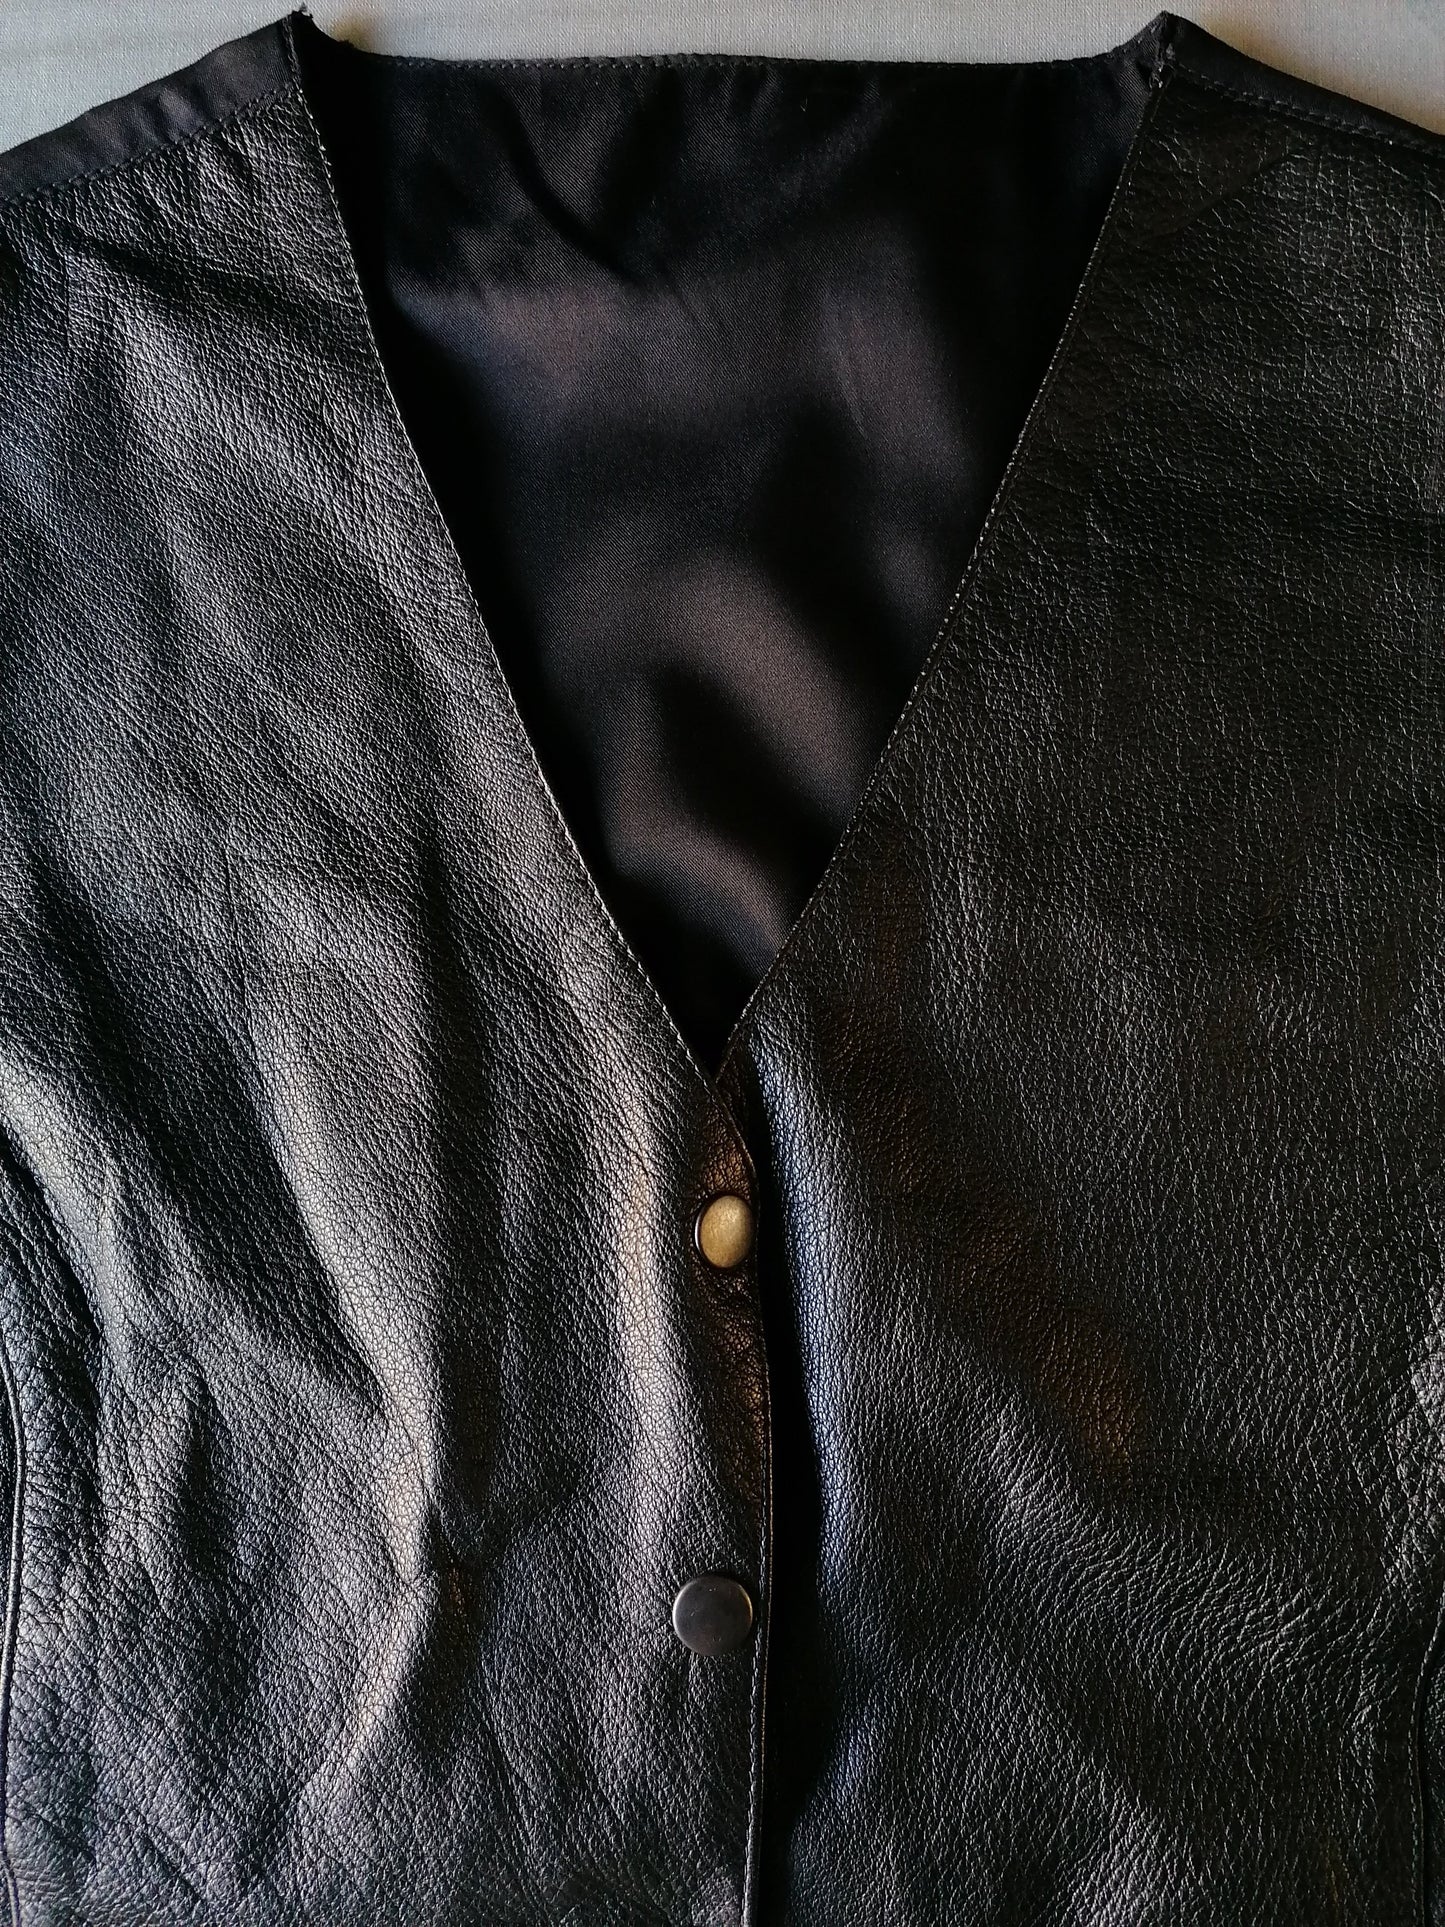 Chaleco de cuero con tachuelas de prensa. Negro de color. Tamaño M. # 253